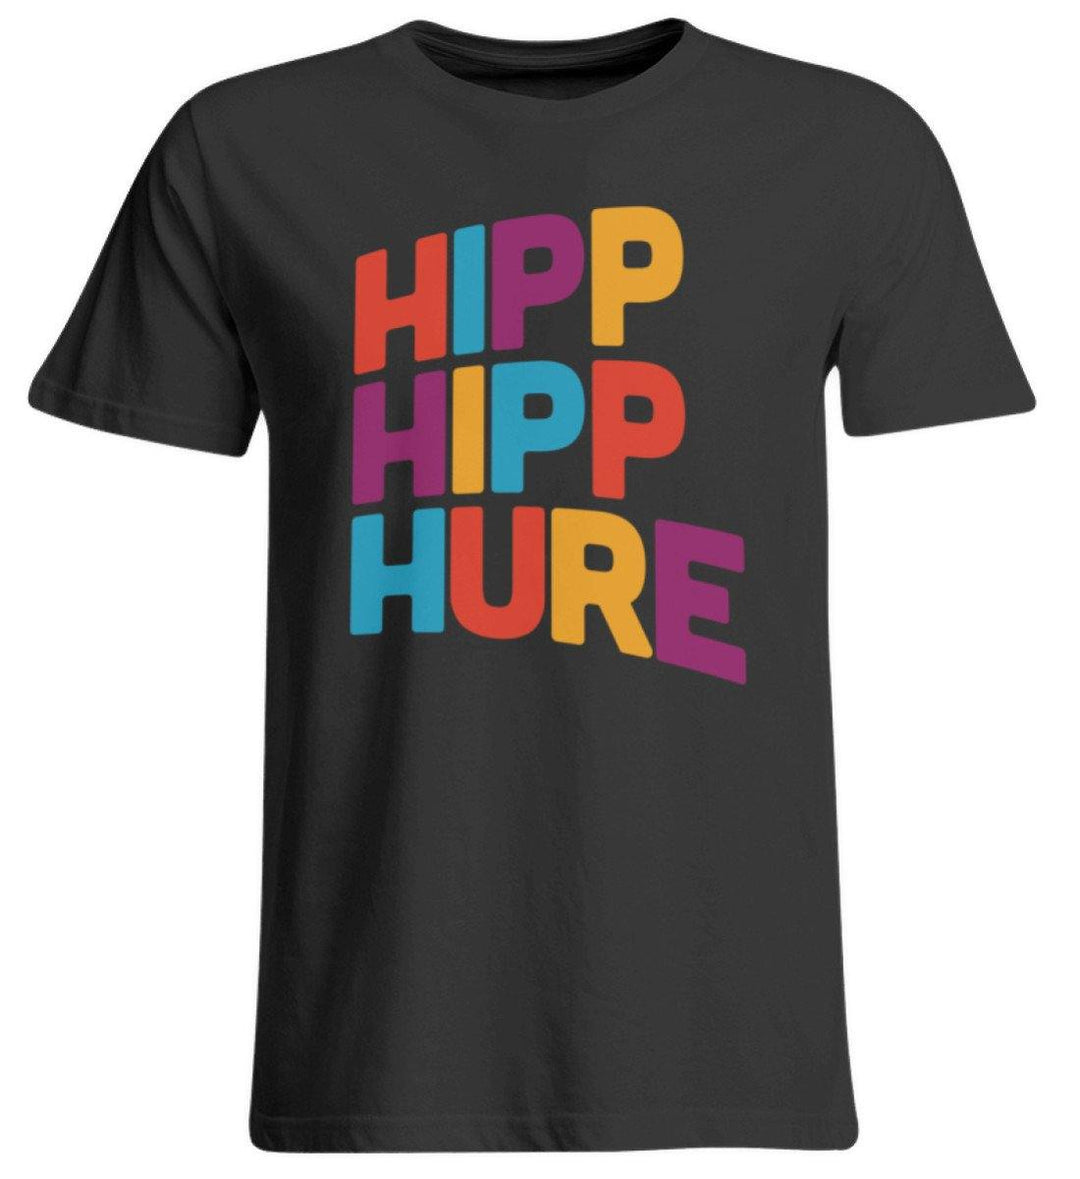 HIPP HIPP HURE- WORDS ON SHIRTS  - Übergrößenshirt - Words on Shirts Sag es mit dem Mittelfinger Shirts Hoodies Sweatshirt Taschen Gymsack Spruch Sprüche Statement